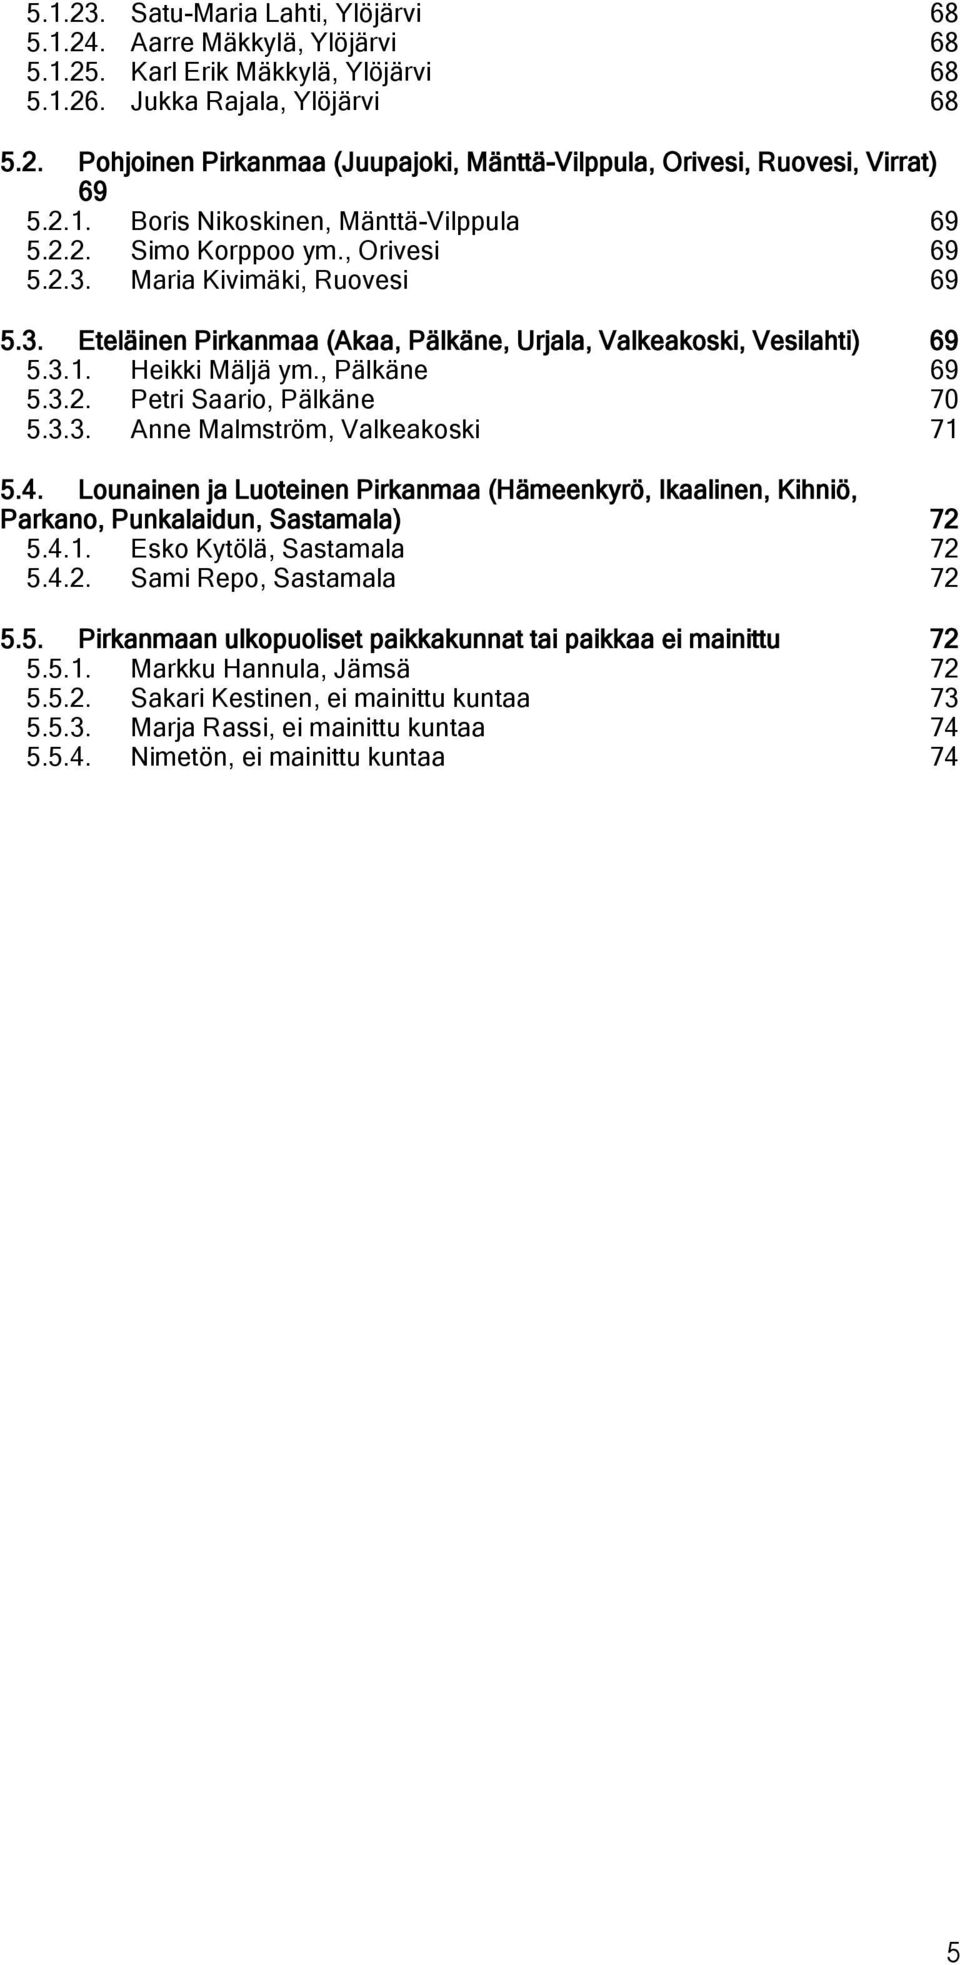 , Pälkäne 69 5.3.2. Petri Saari, Pälkäne 70 5.3.3. Anne Malmström, Valkeakski 71 5.4. Lunainen ja Luteinen Pirkanmaa (Hämeenkyrö, Ikaalinen, Kihniö, Parkan, Punkalaidun, Sastamala) 72 5.4.1. Esk Kytölä, Sastamala 72 5.